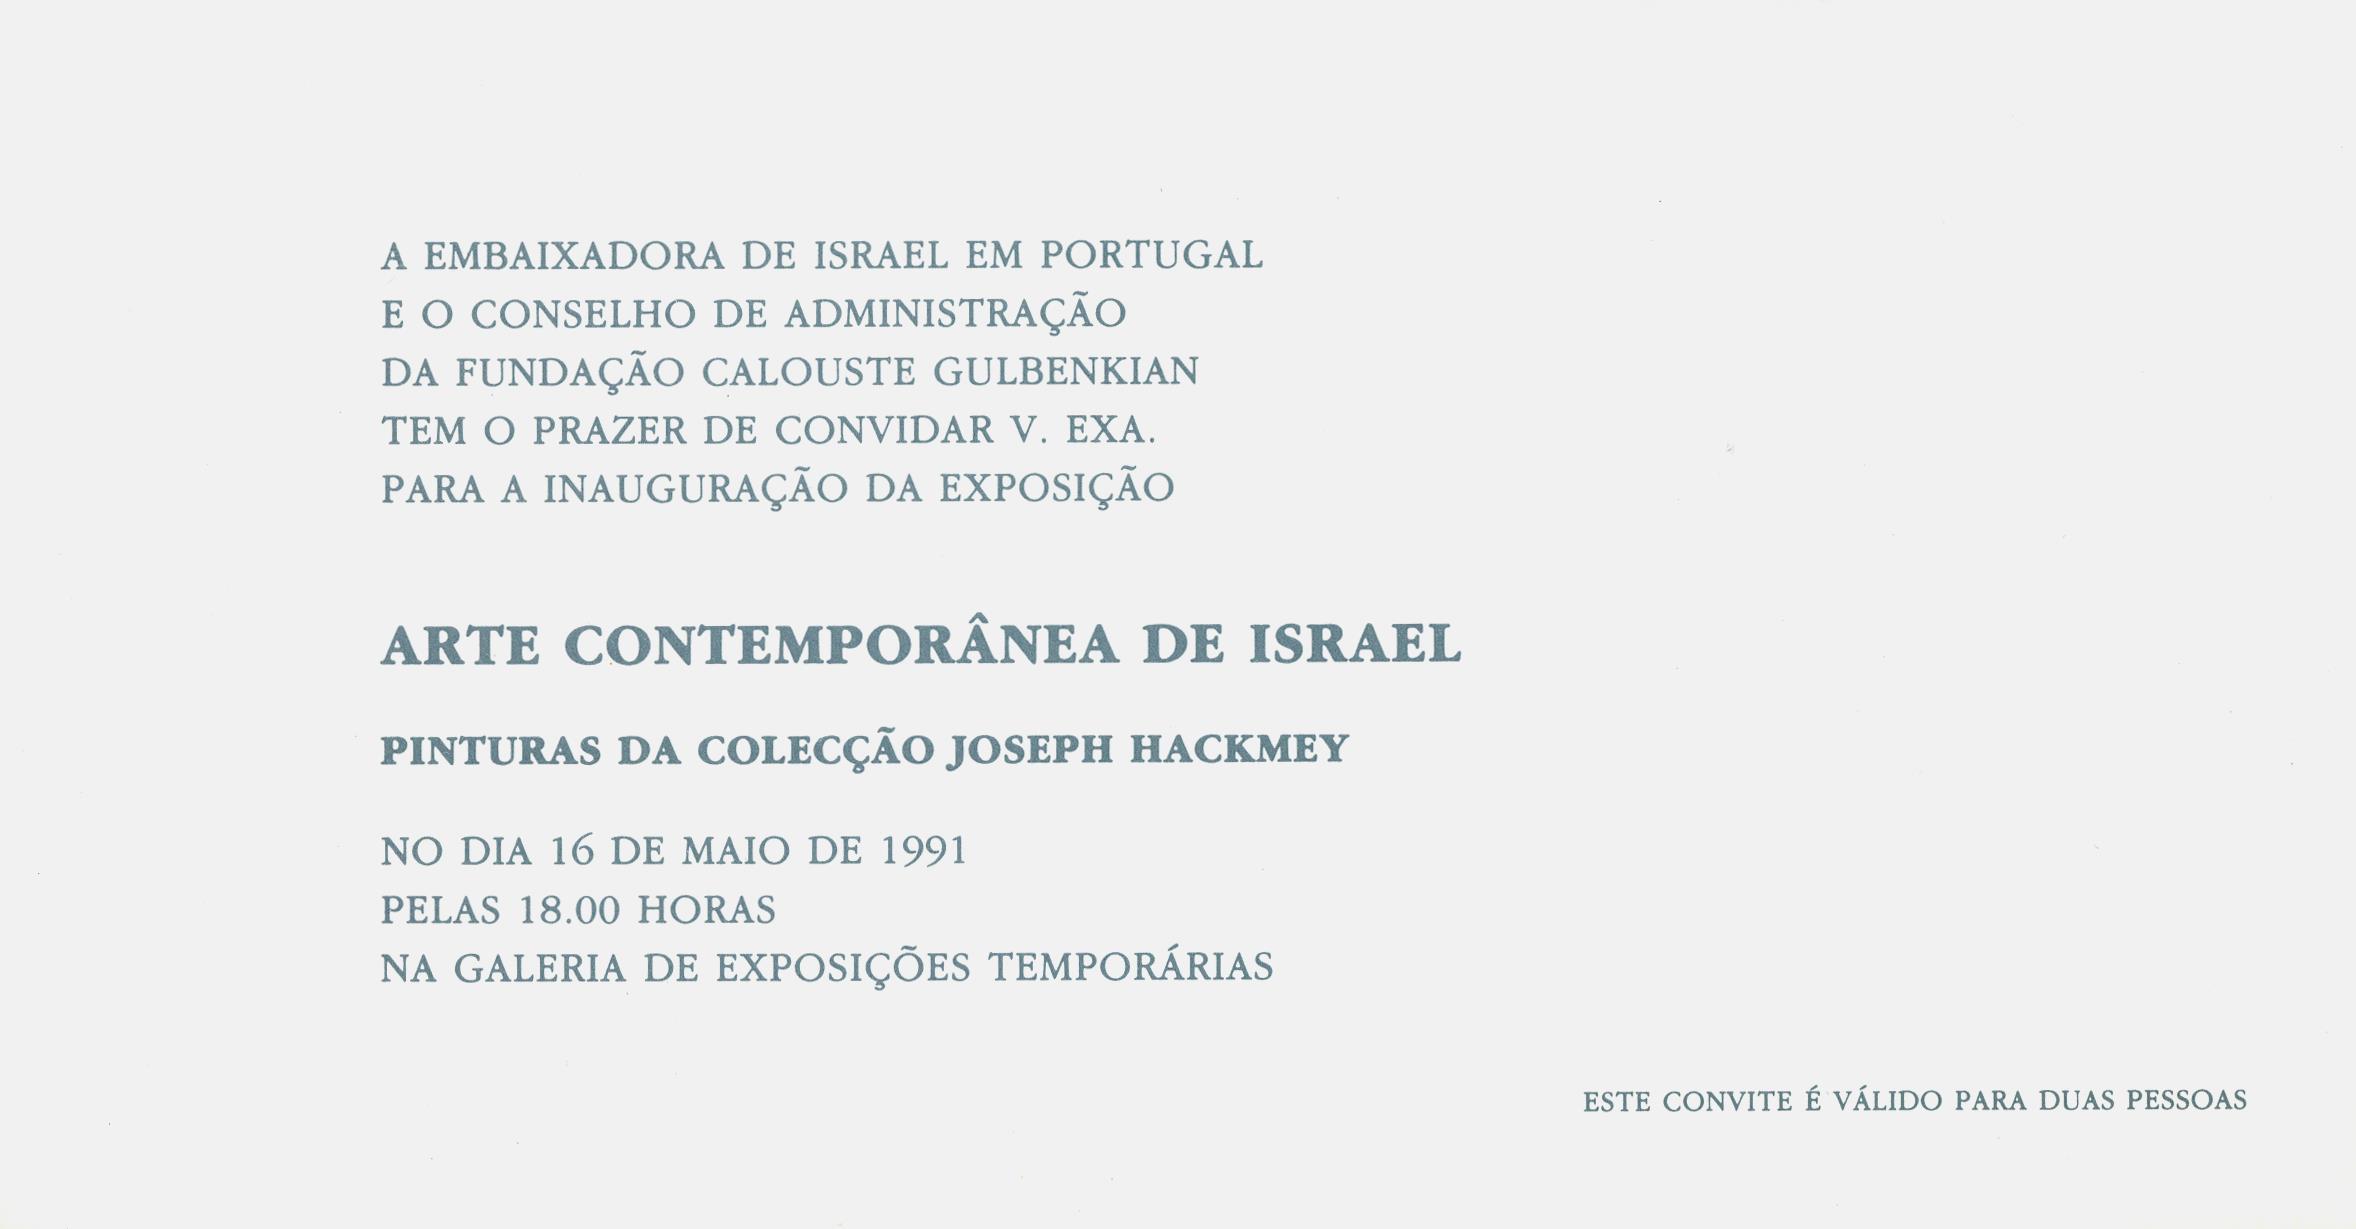 BA_Ephemera_1991_Arte_Contemporanea_Israel_1.2